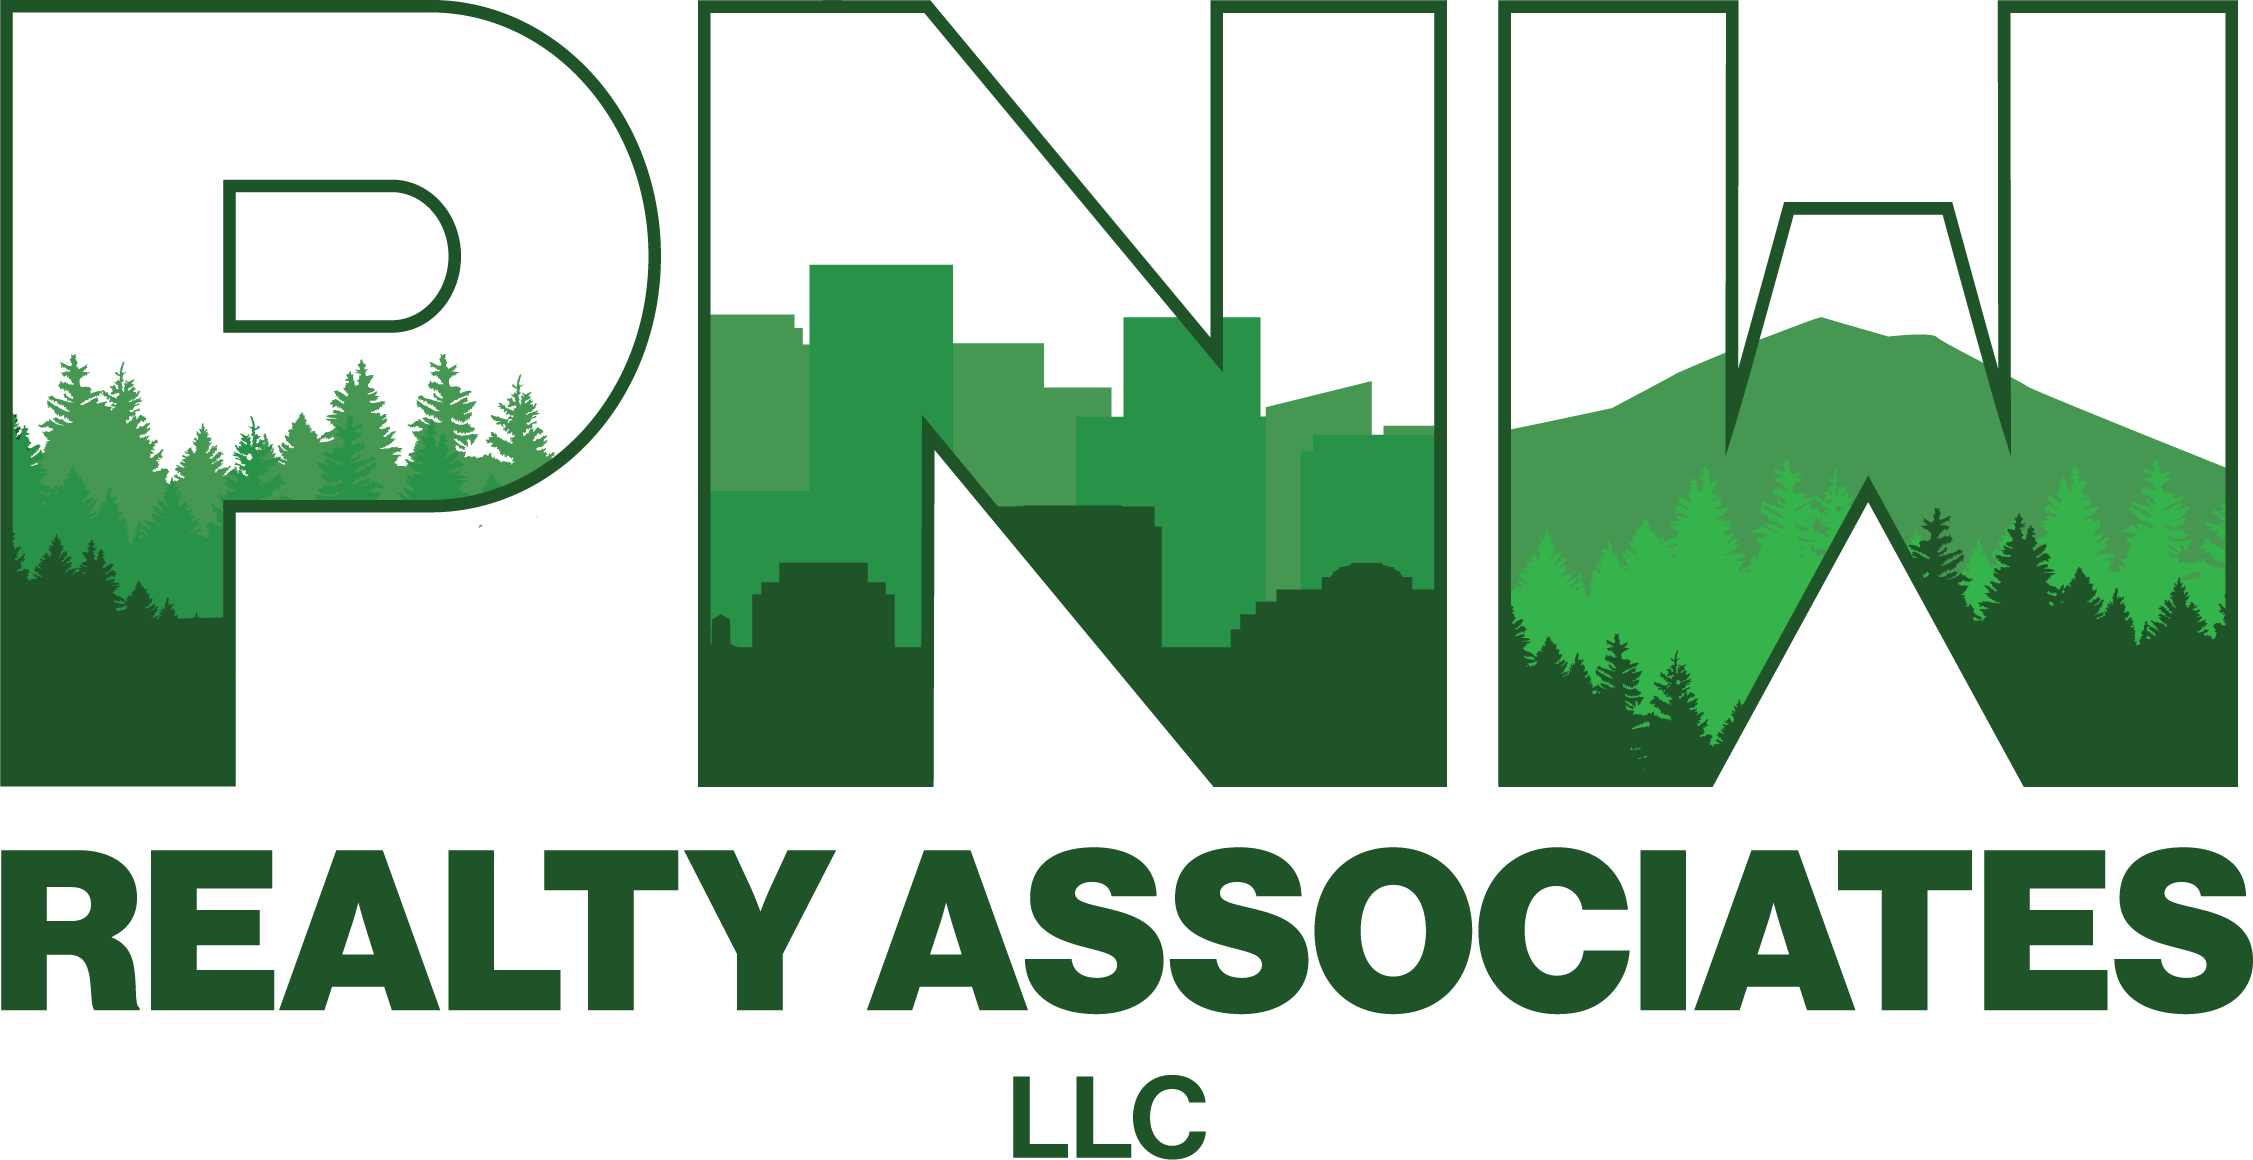 PNW Realty Associates, LLC